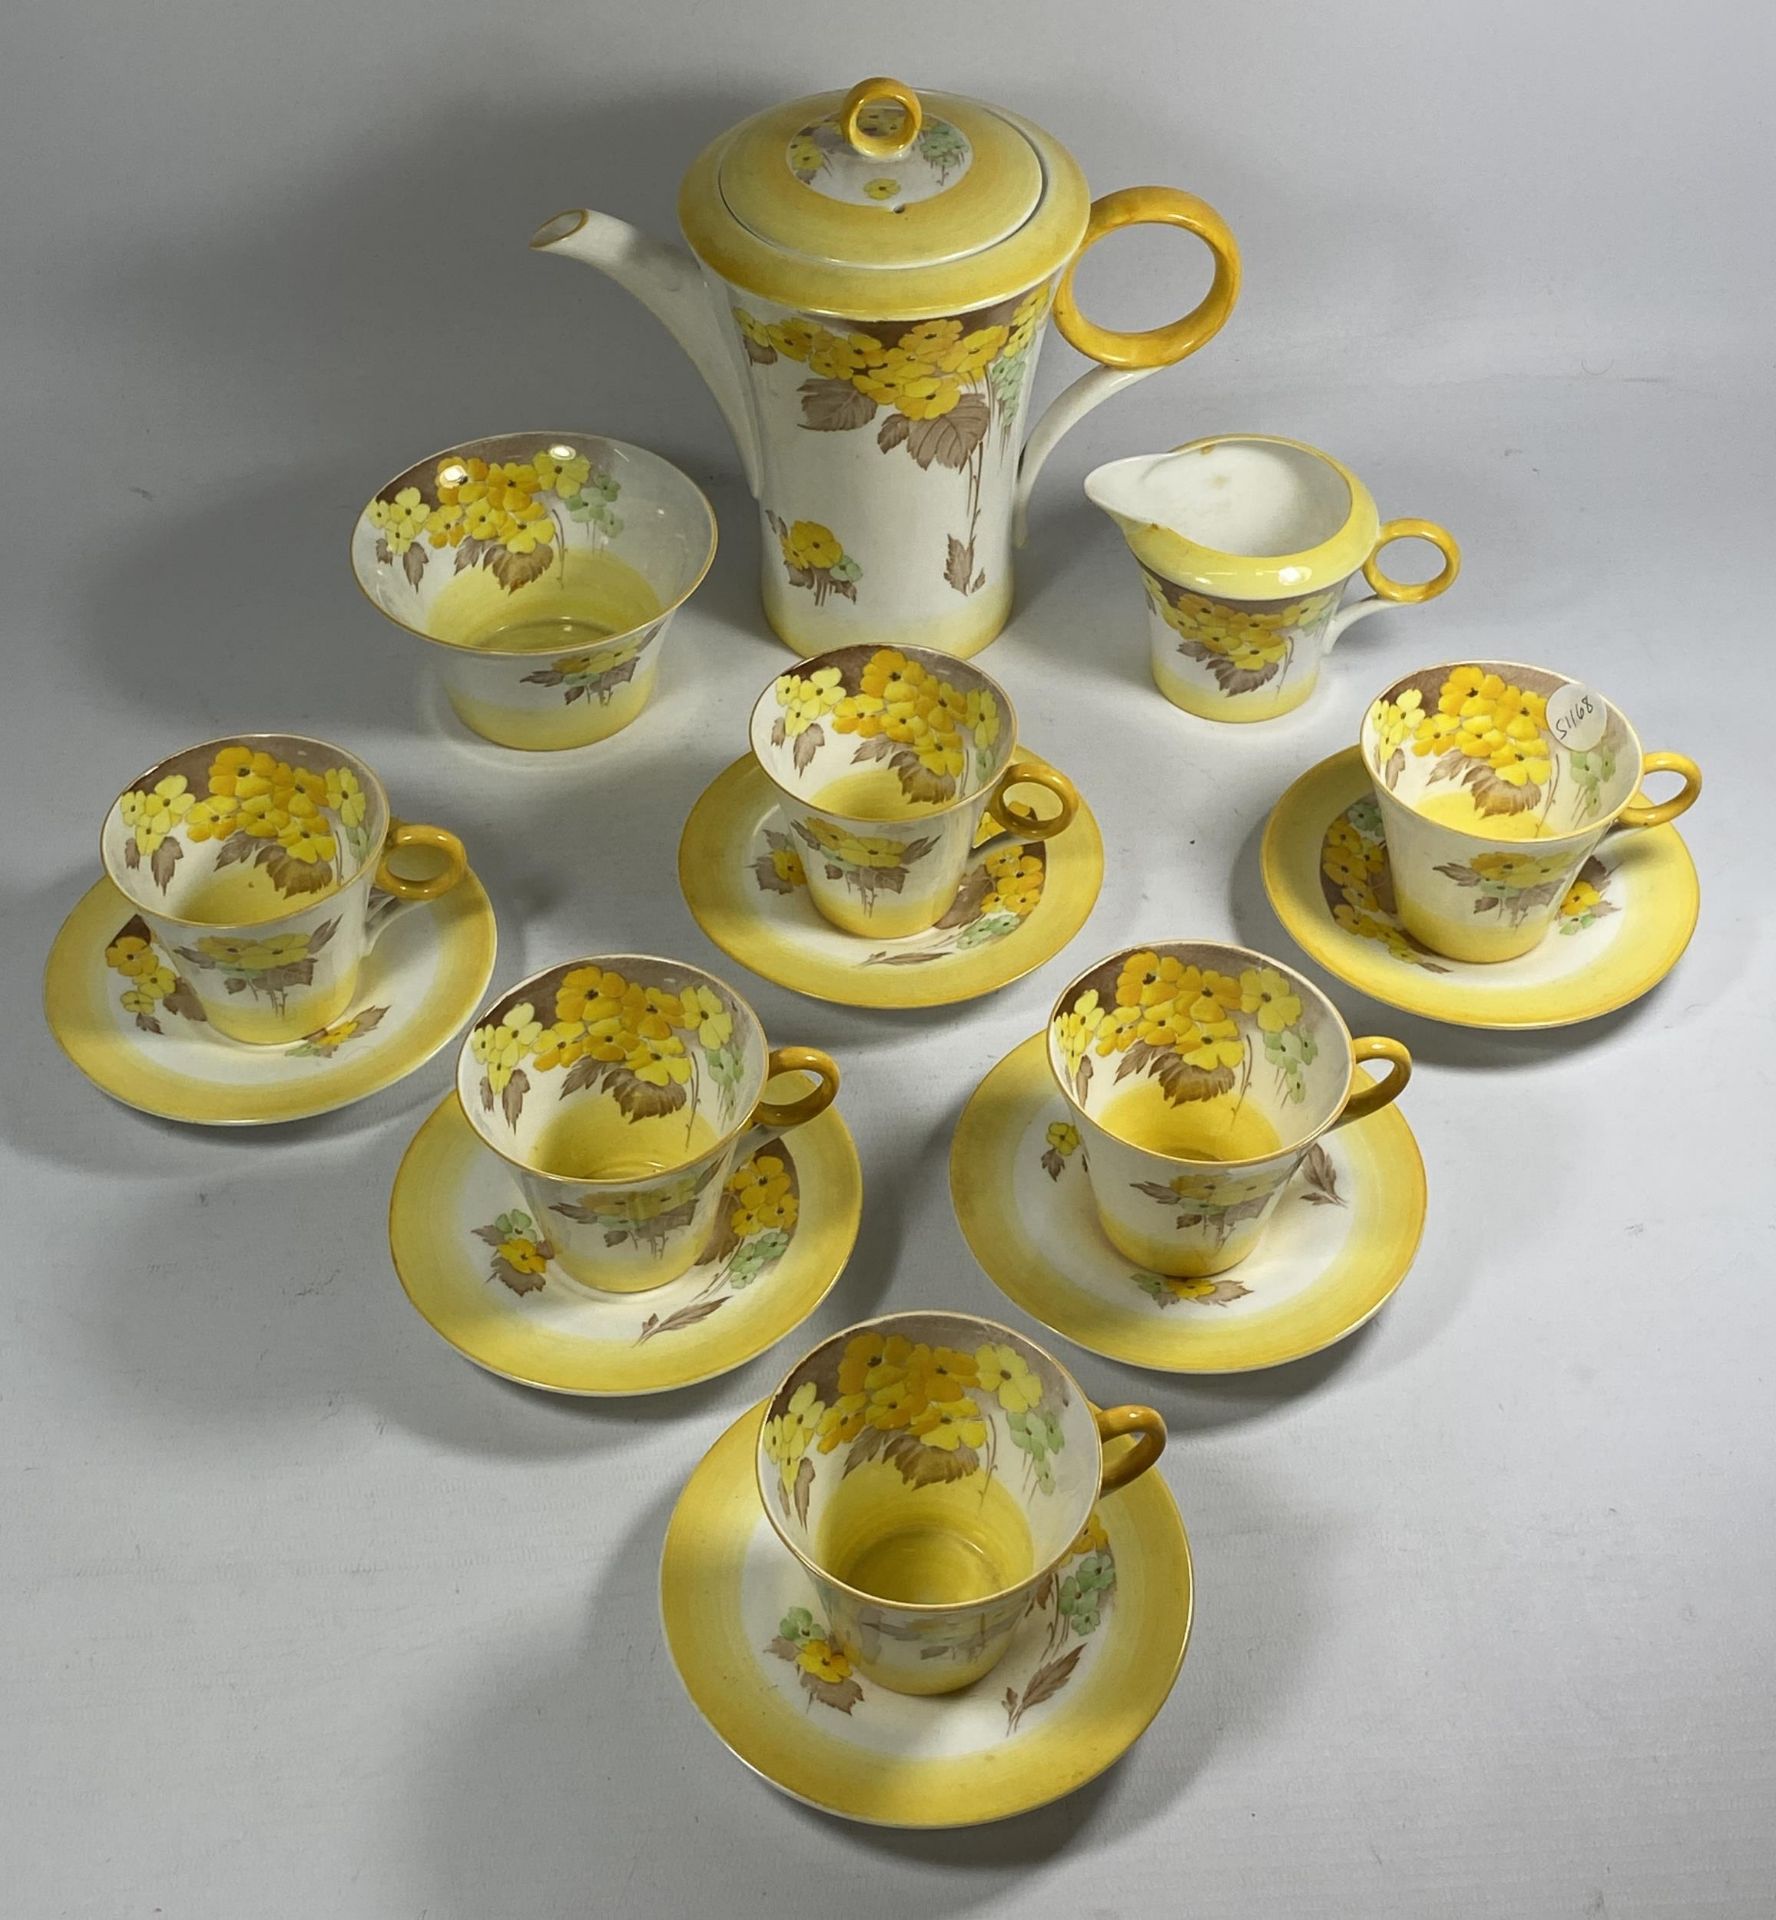 A SHELLEY ART DECO 'PHLOX' PATTERN TEA SET COMPRISING TEAPOT, SUGAR BOWL, CREAM JUG AND SIX CUPS AND